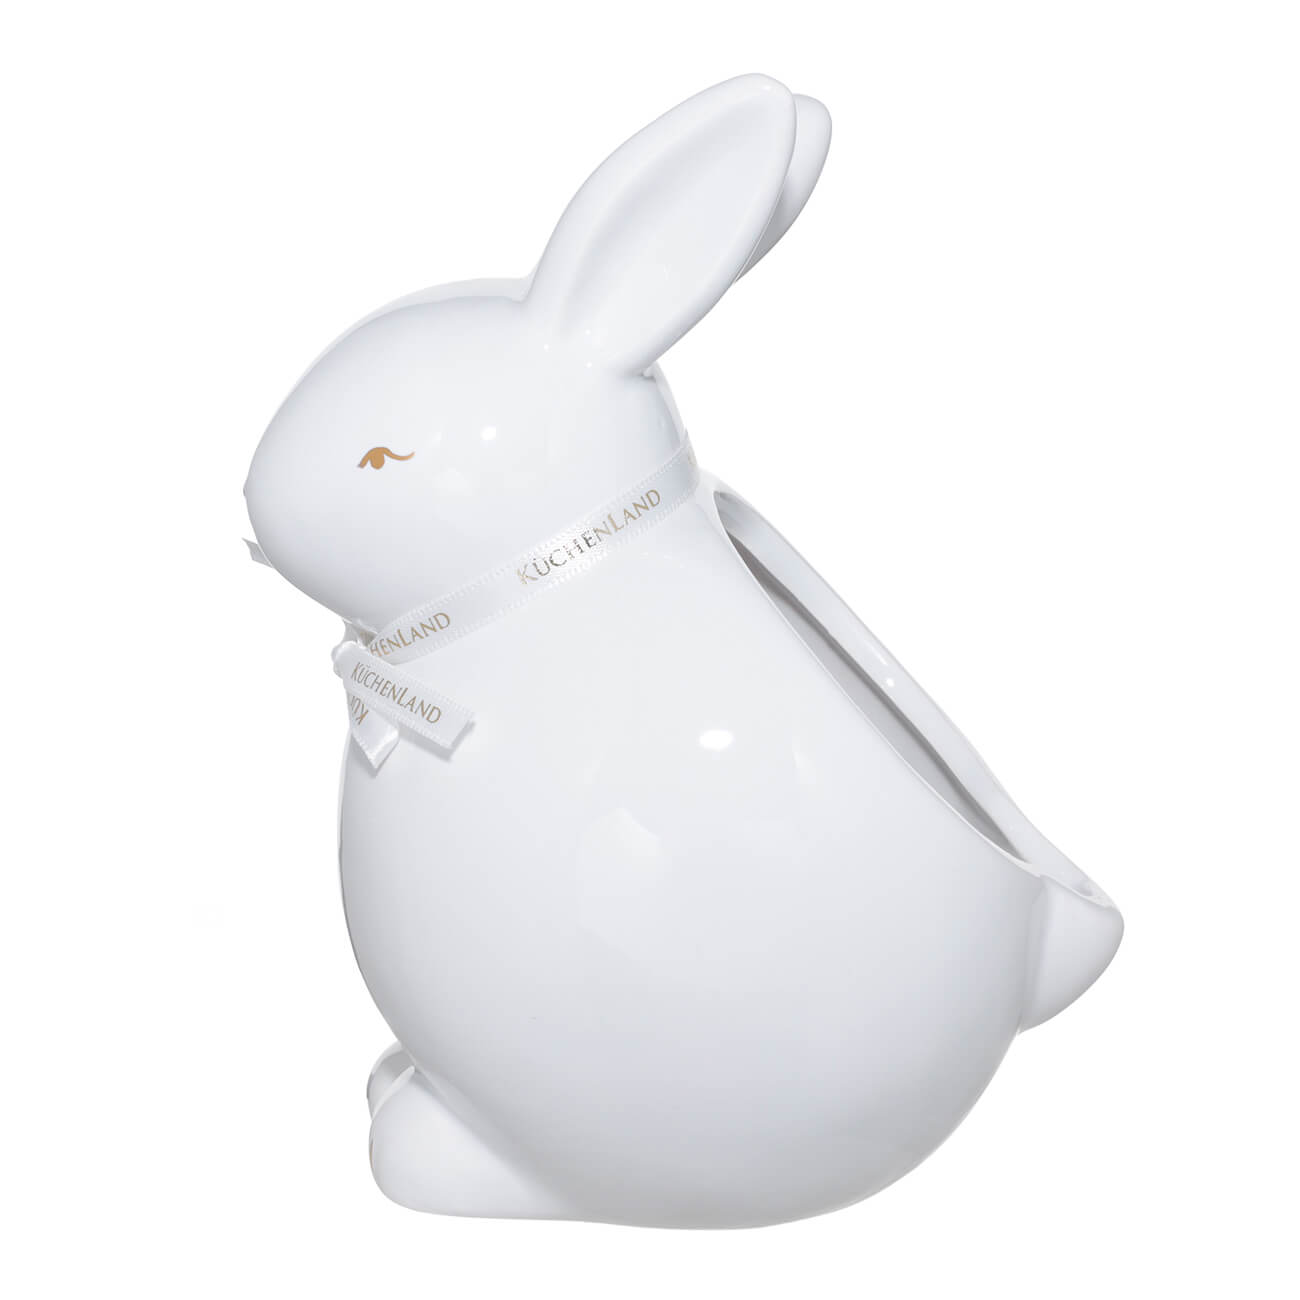 Конфетница, 20х16 см, керамика, белая, Кролик сидит, Easter gold